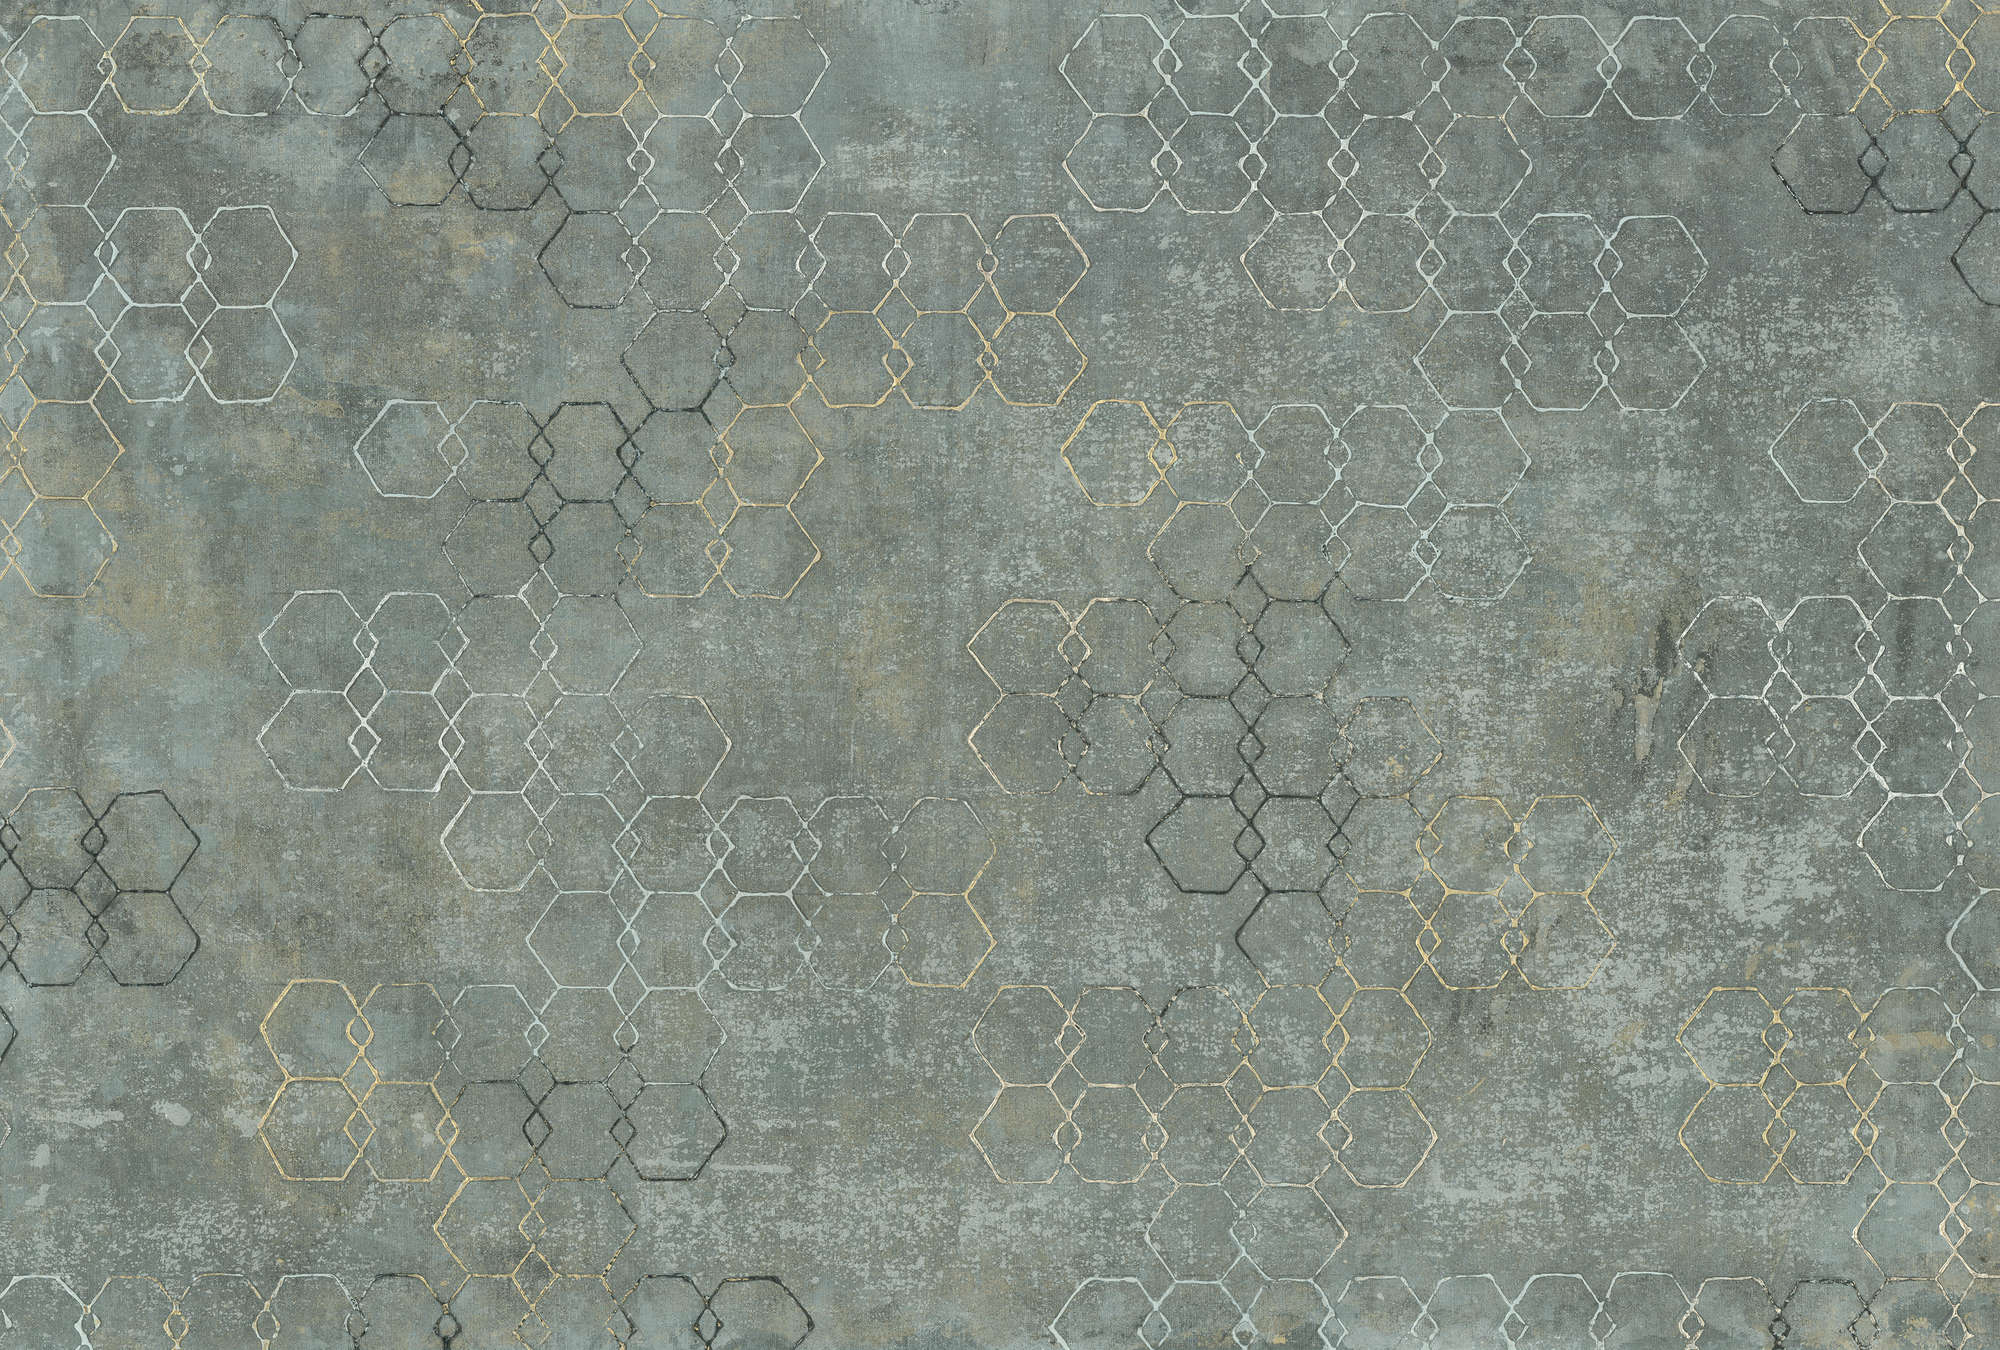             Fototapete Betonoptik Hexagon-Design & Industrial Look – Grau, Weiß, Gold
        